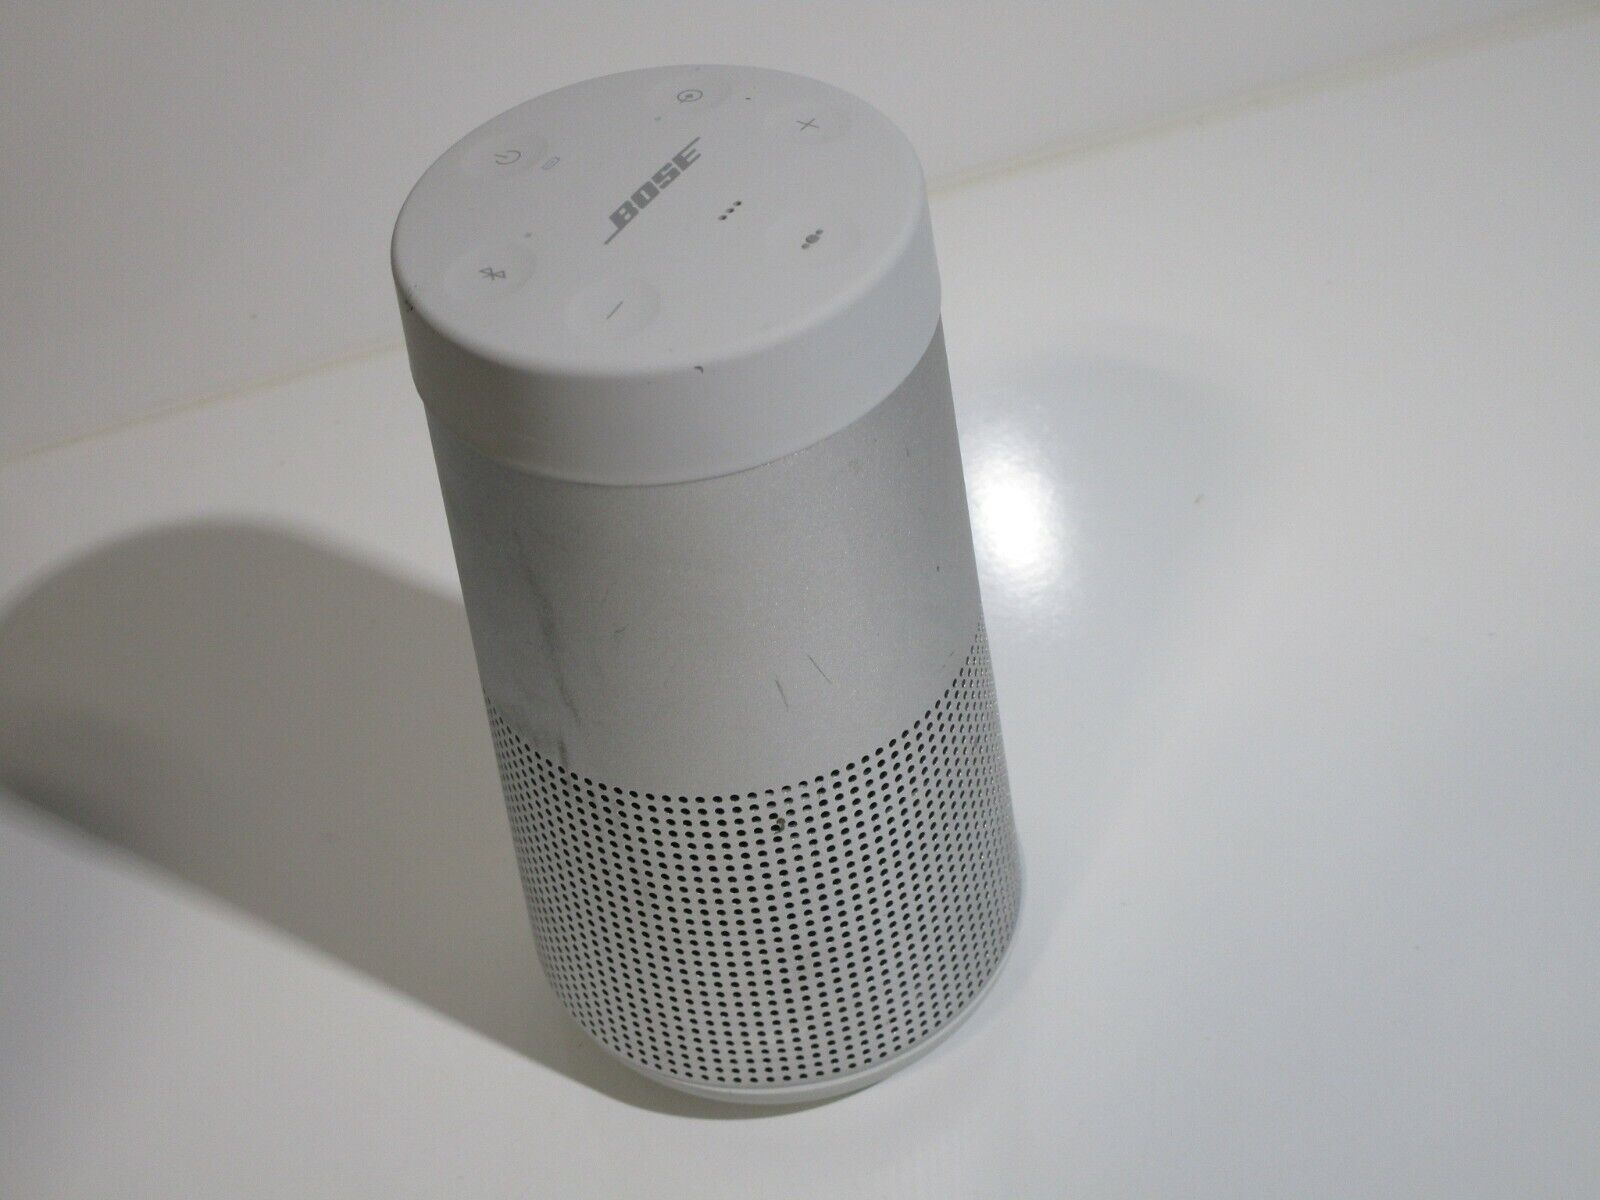 SoundLink Revolve II Bluetooth Speaker - for sale online eBay